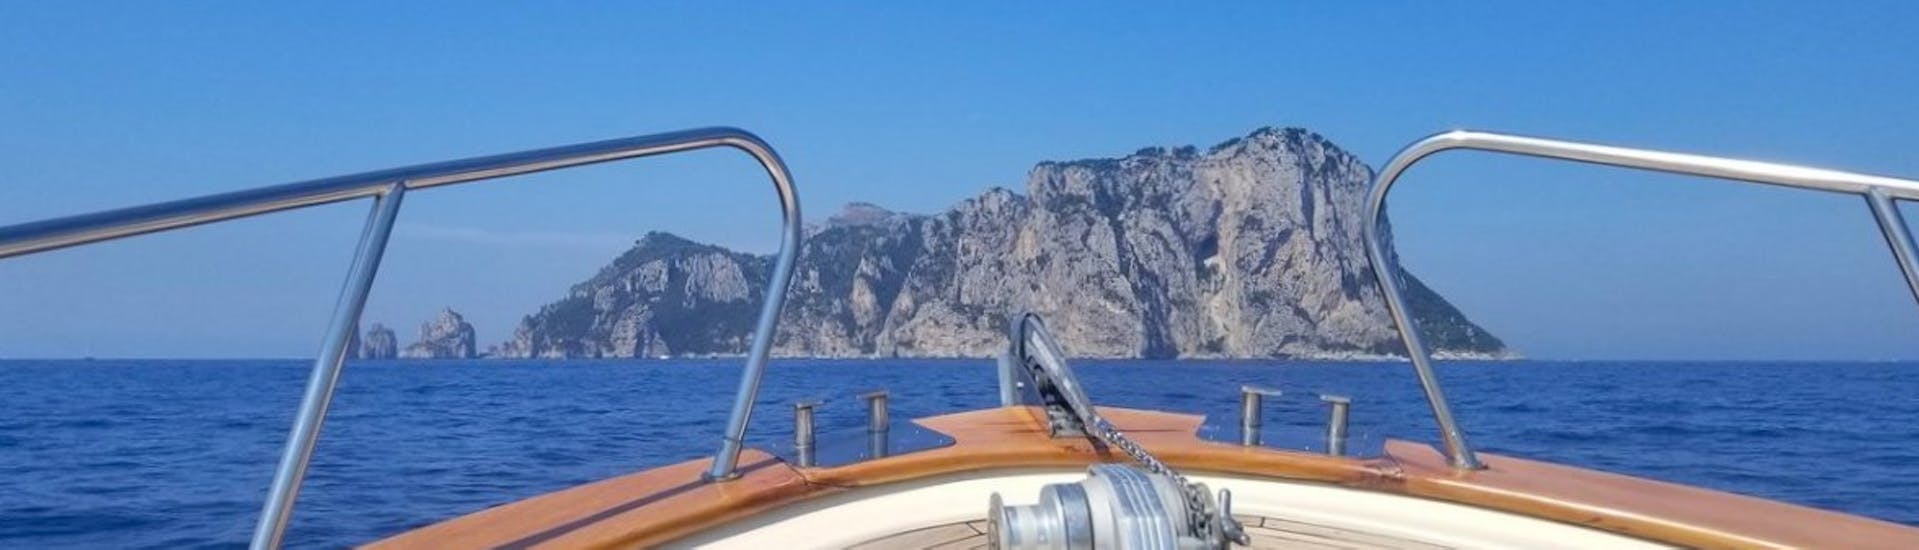 Gita in barca a Capri e alle sue grotte con sosta per nuotare e drink di benvenuto.